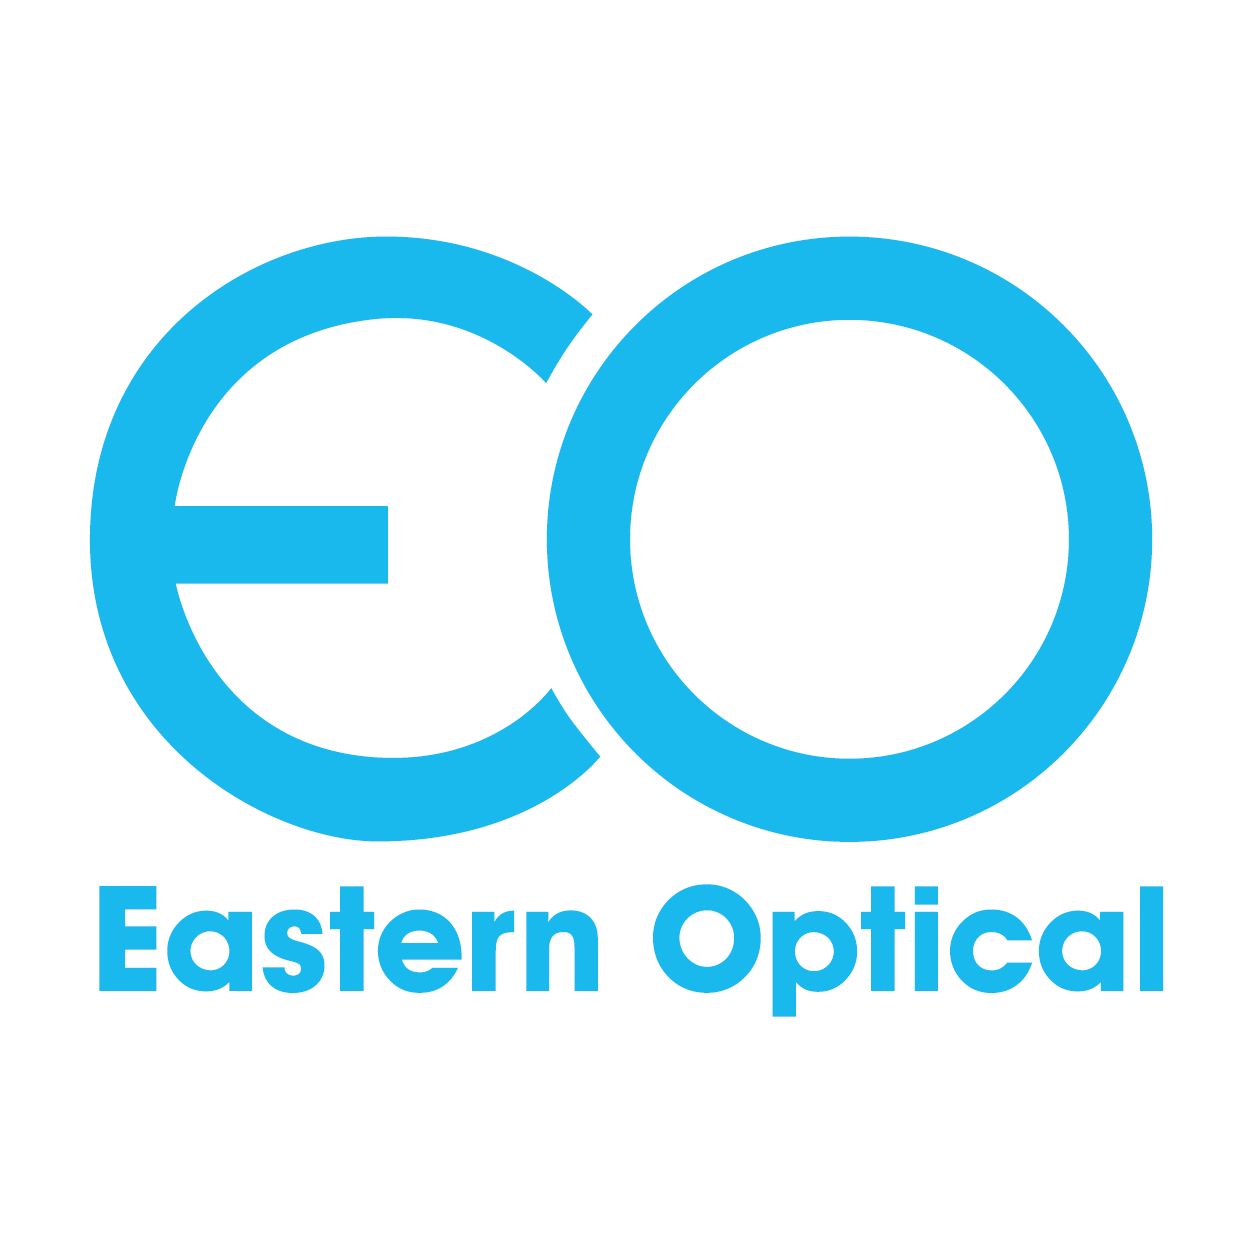 Eastern Optical Company